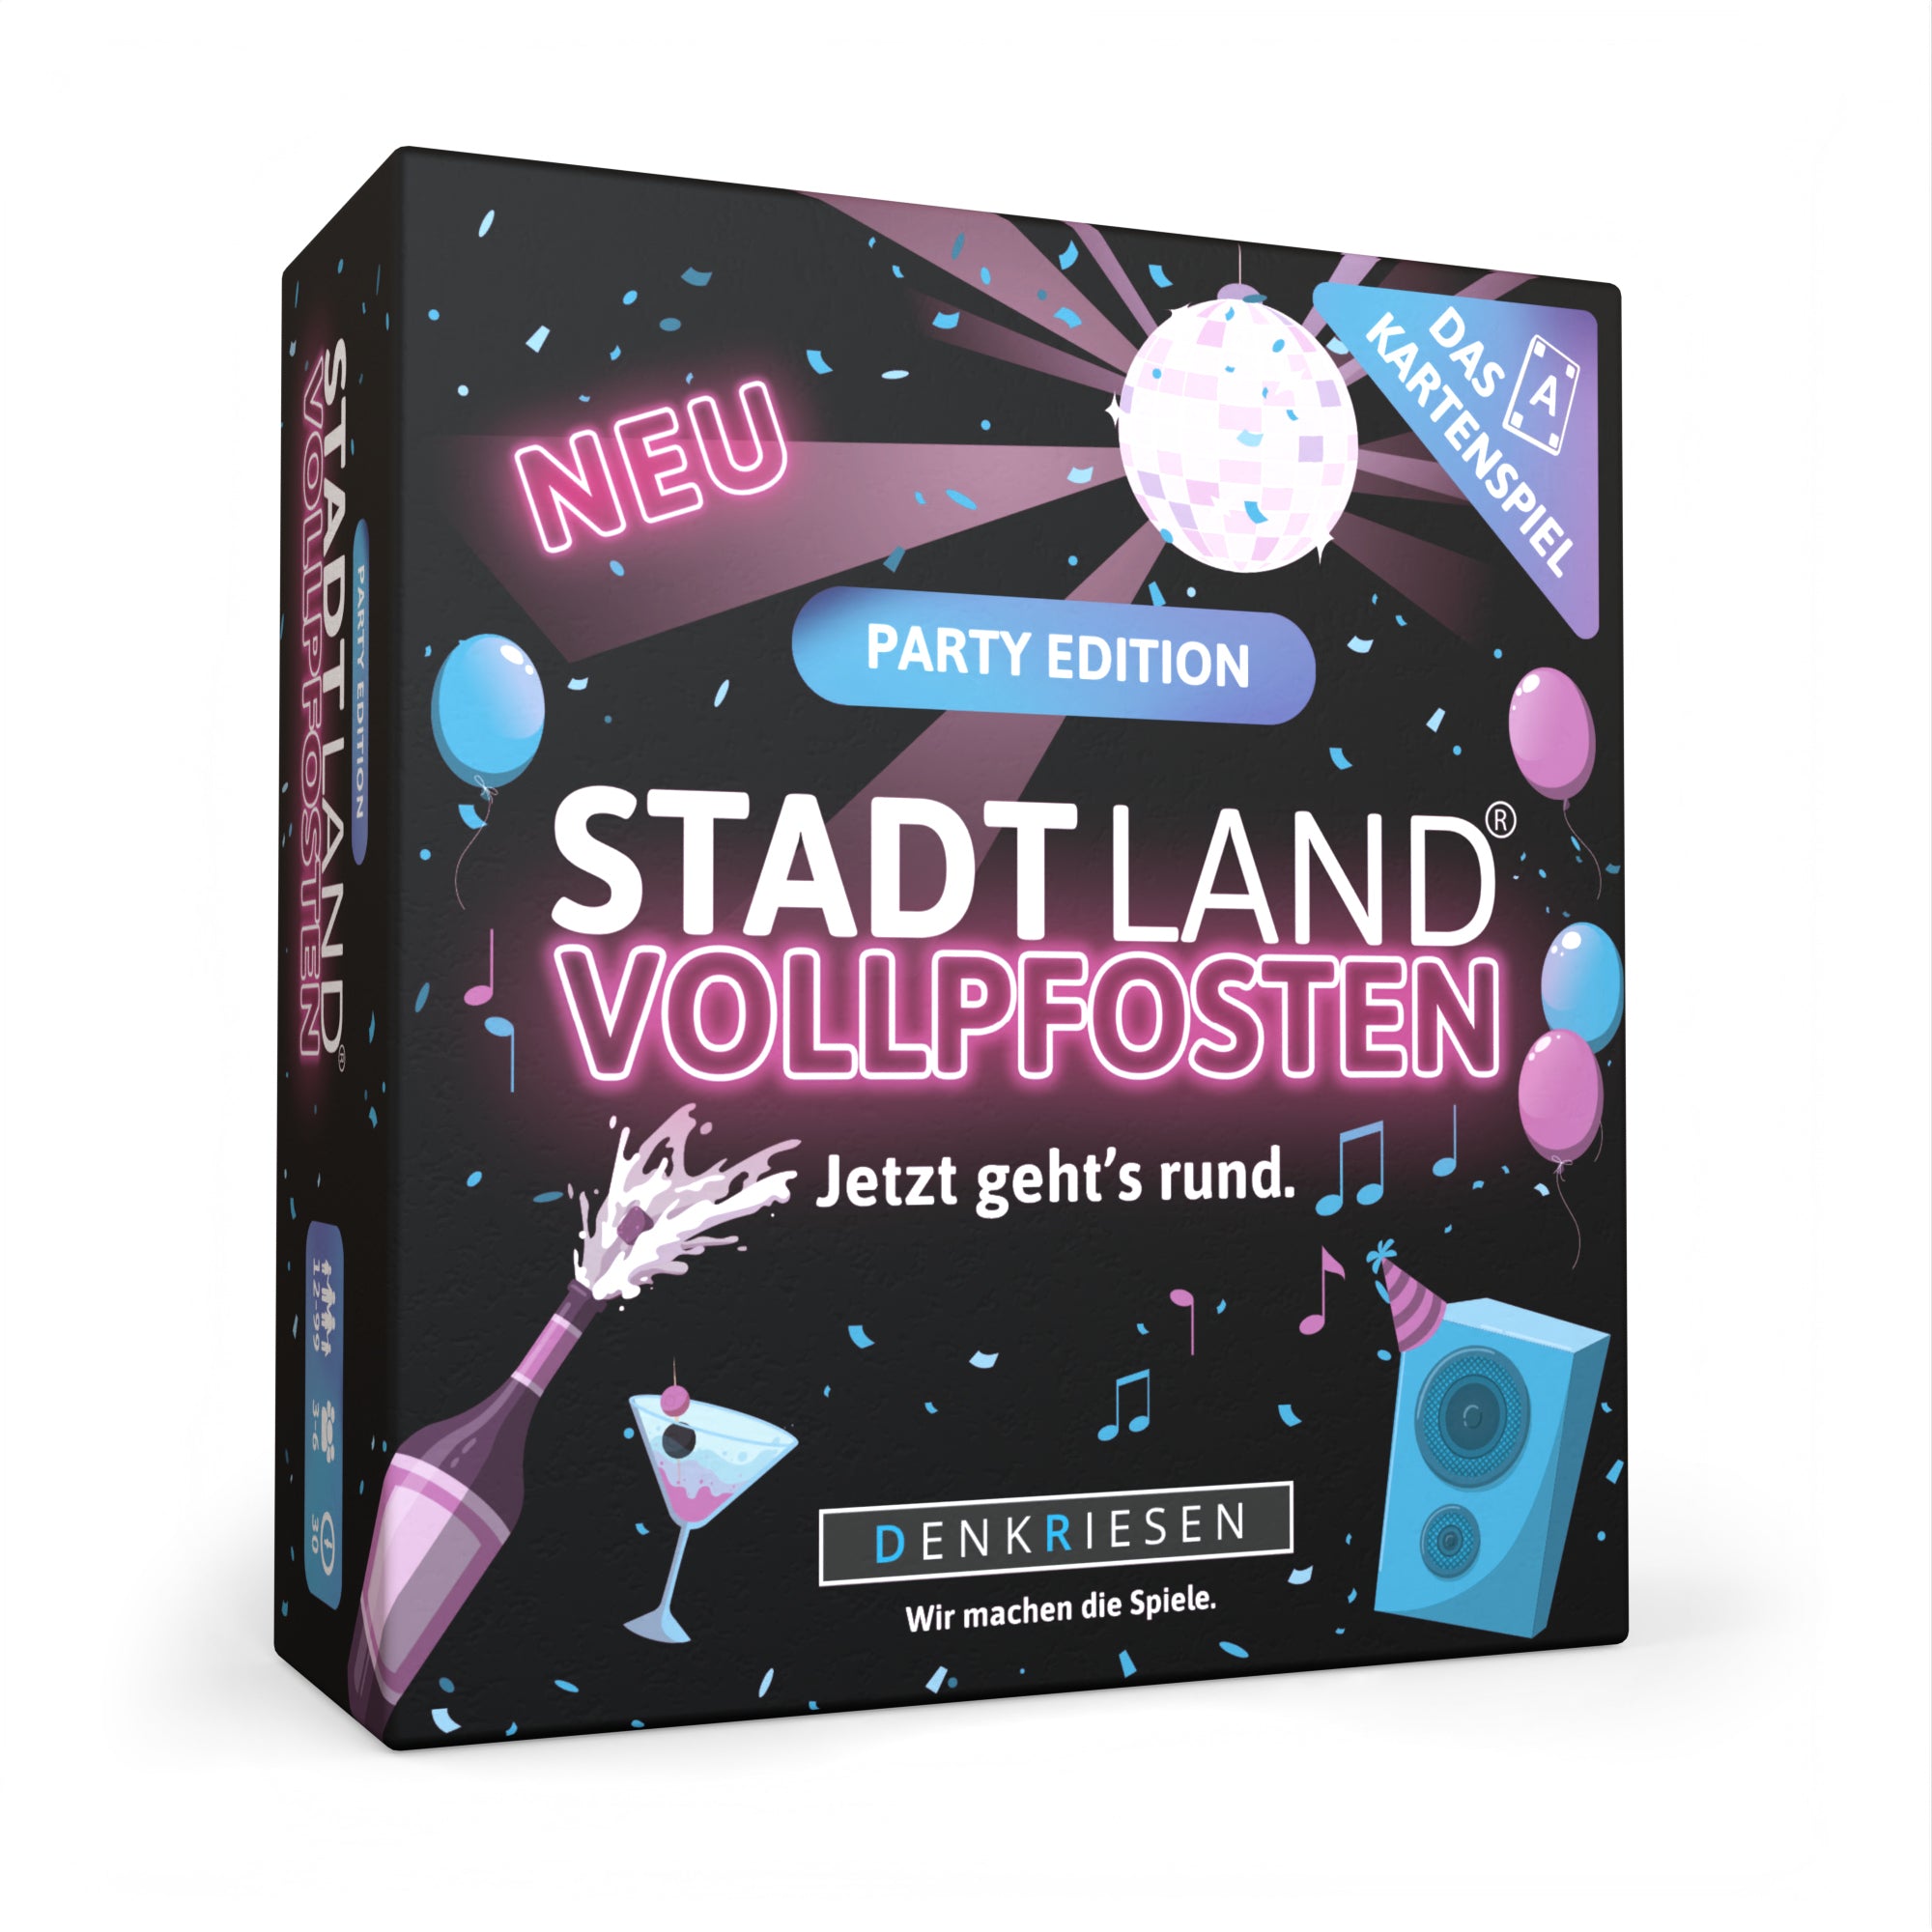 Stadt Land Vollpfosten® Party Edition – "Jetzt geht's rund." | Das Kartenspiel